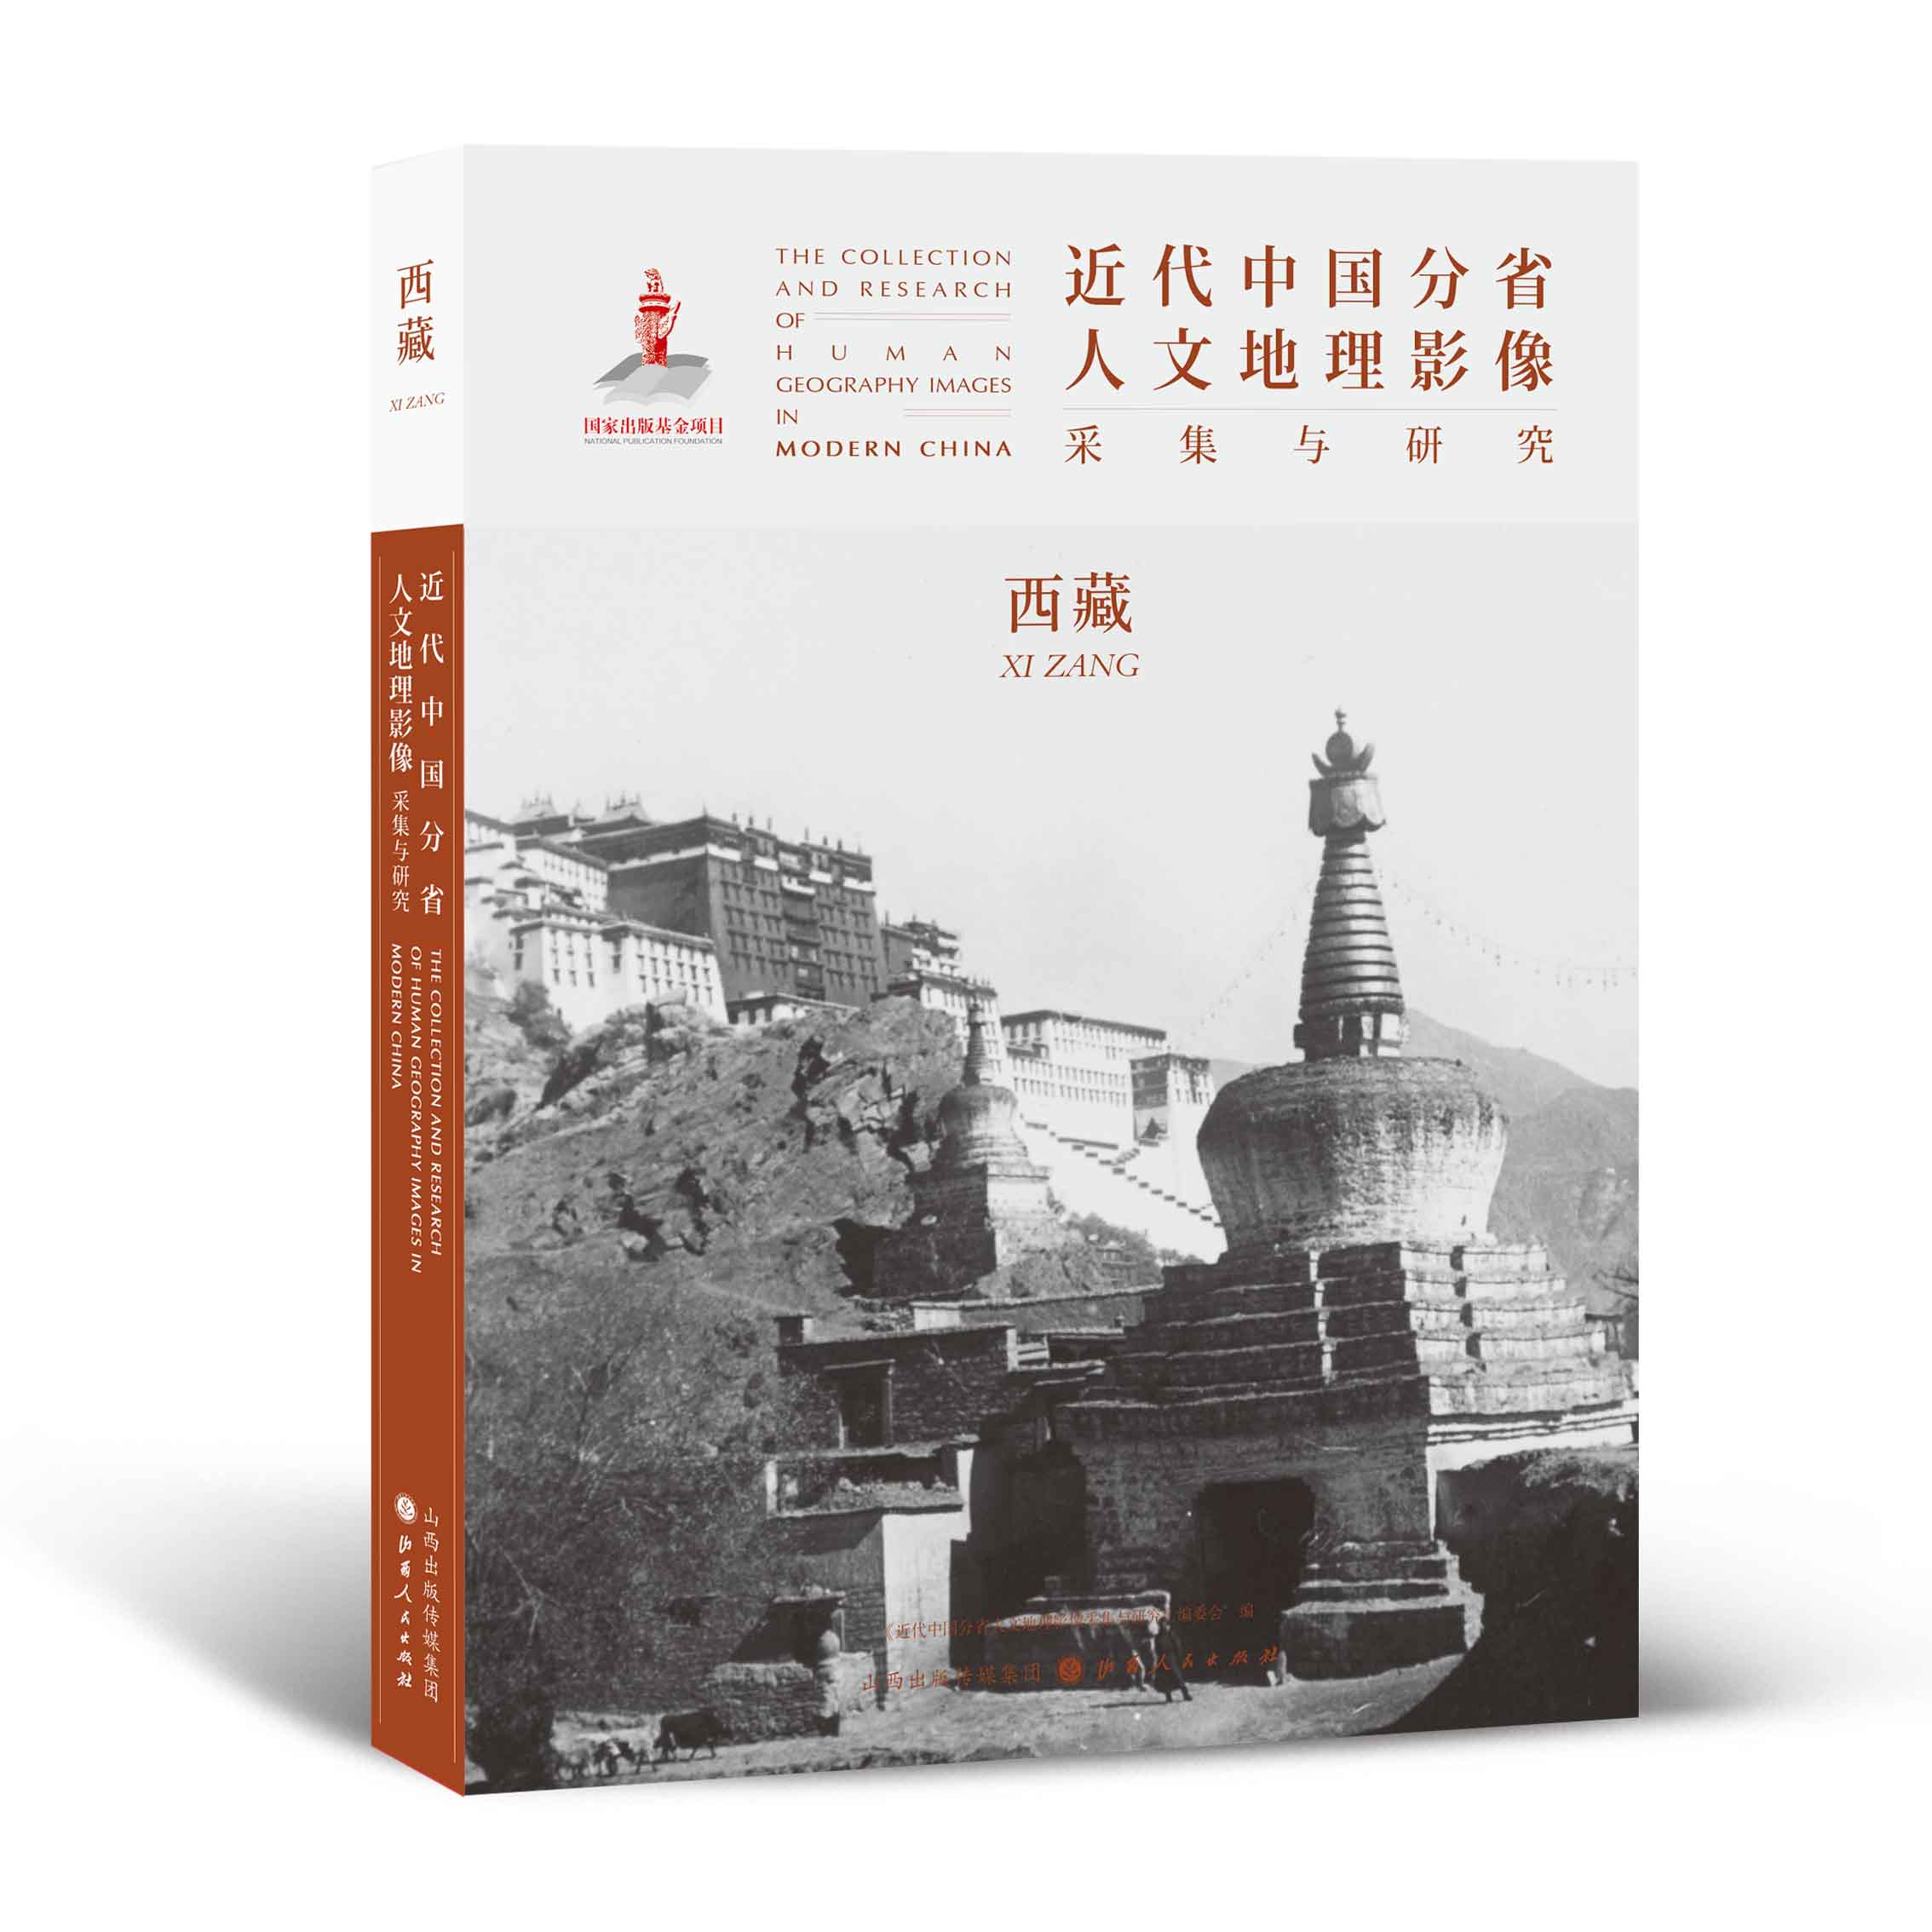 正版包邮 近代中国分省人文地理影像采集与研究 西藏 国家出版基金项目 全球采集 用图像读懂中国近代史 近代中国的影像读本